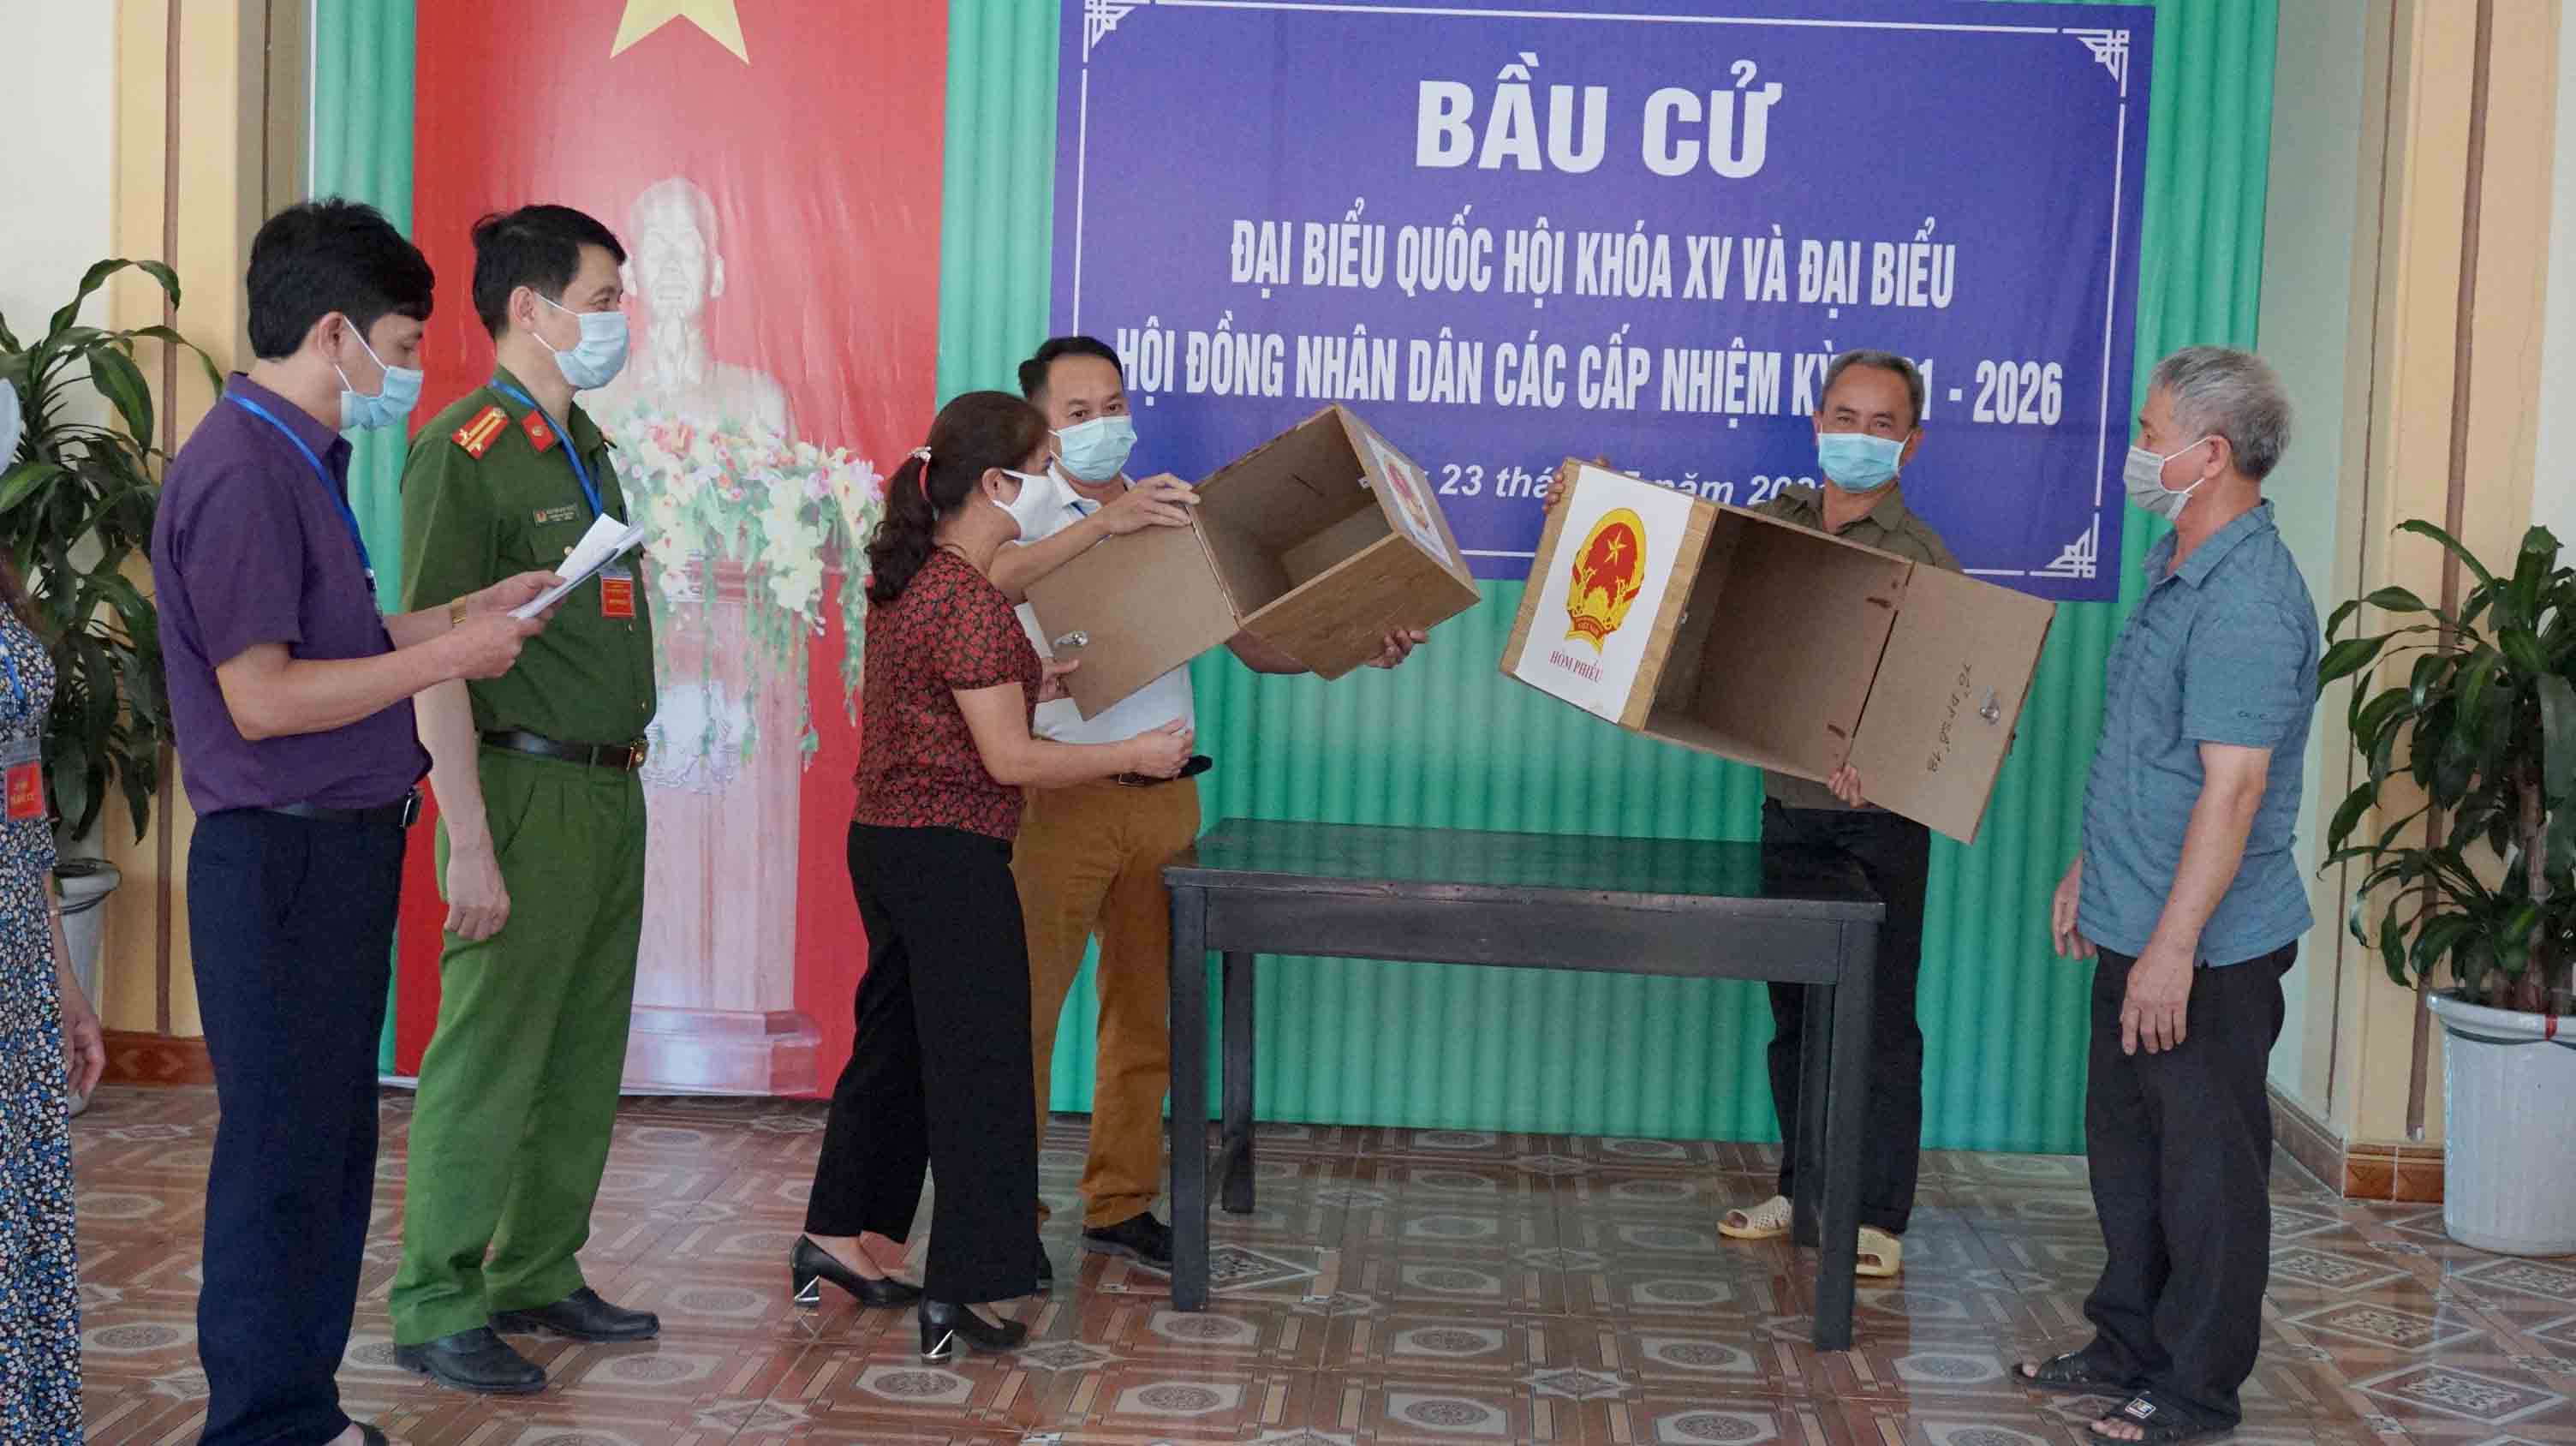 Thành viên tổ bầu cử Khu vực bỏ phiếu số 13 (Nhà khách Tây Bắc Xanh, Bộ Chỉ huy Bộ đội Biên phòng tỉnh, phường Tân Phong, thành phố Lai Châu) kiểm tra hòm phiếu trước khi tiến hành bầu cử. (Ảnh Thắm Duy)